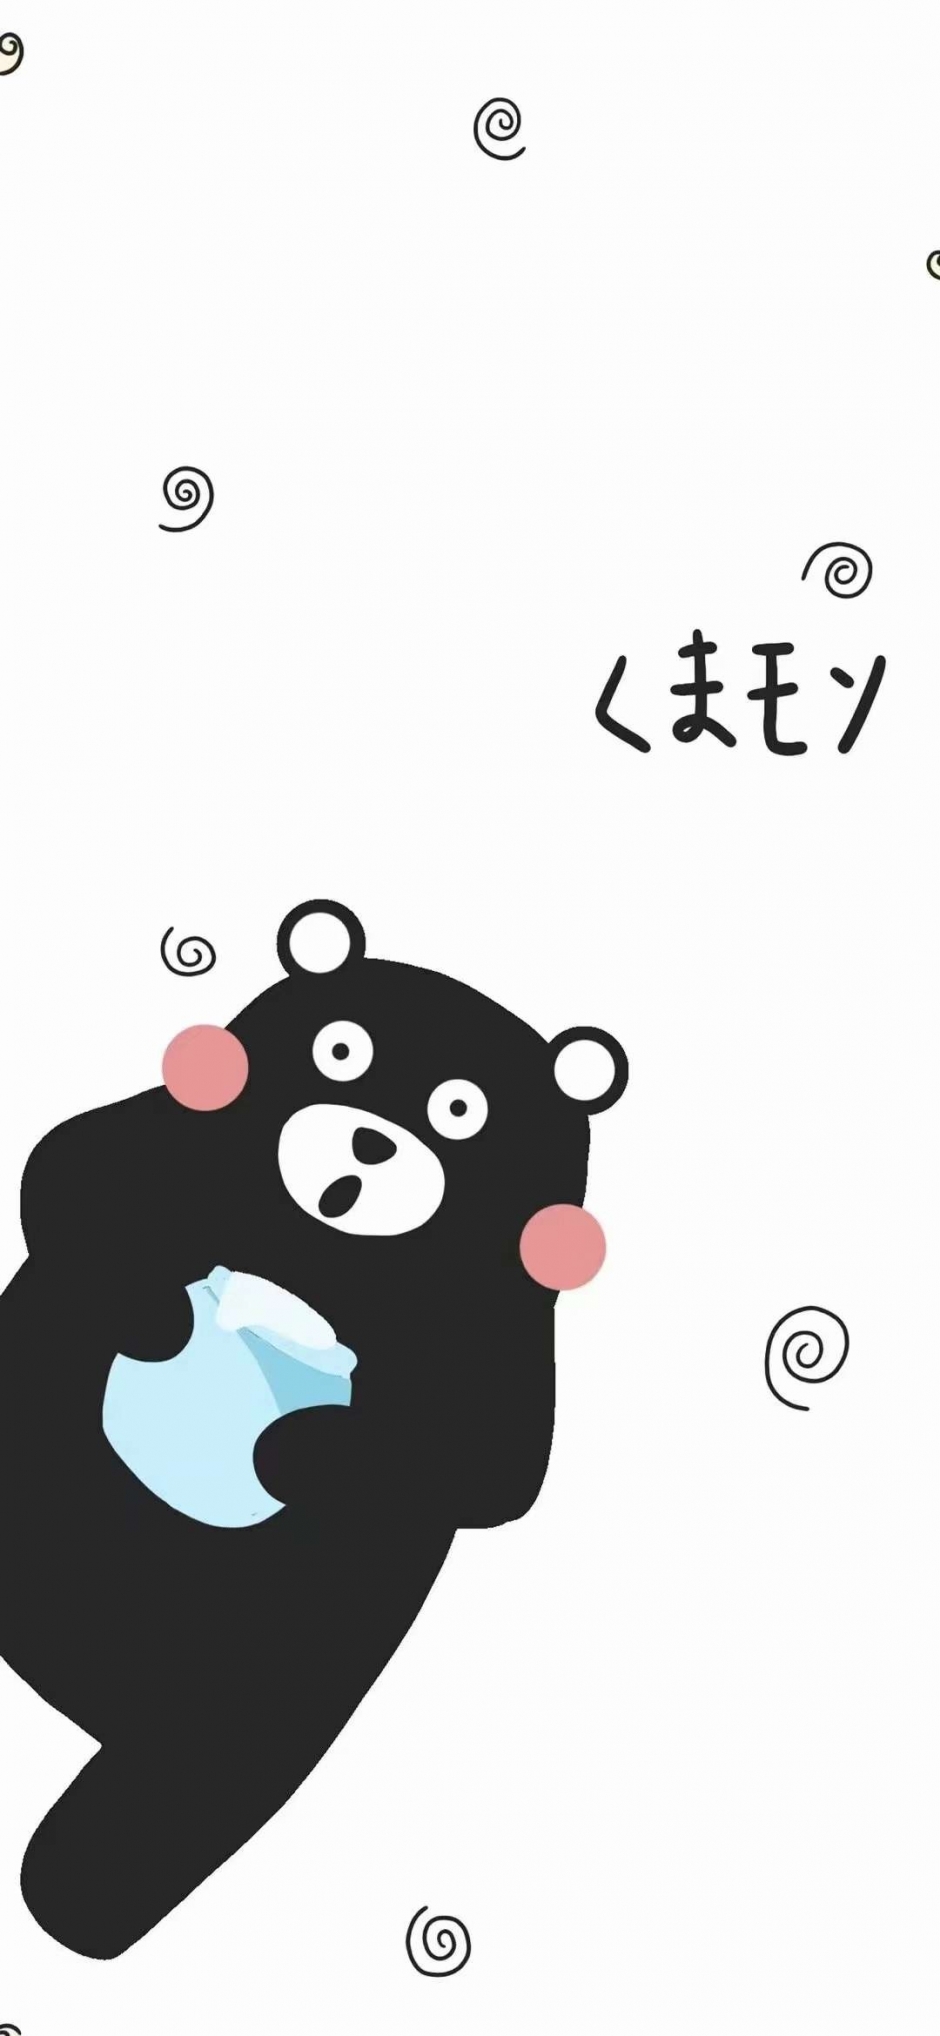 熊本熊可爱卡通动物带文字日文手机壁纸 图片大全